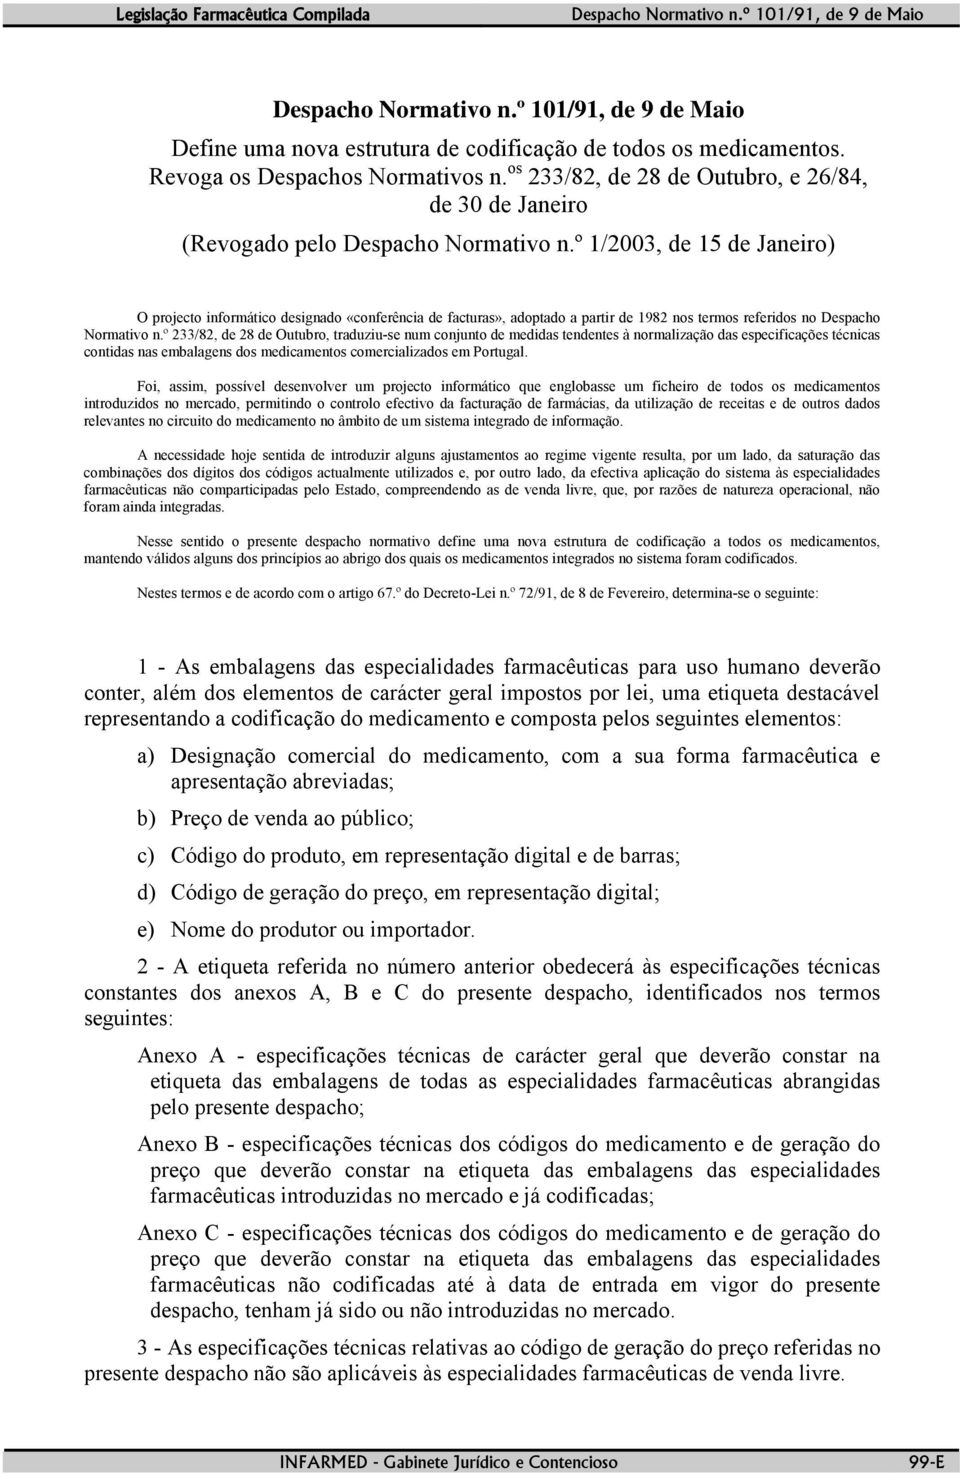 º 233/82, de 28 de Outubro, traduziu-se num conjunto de medidas tendentes à normalização das especificações técnicas contidas nas embalagens dos medicamentos comercializados em Portugal.